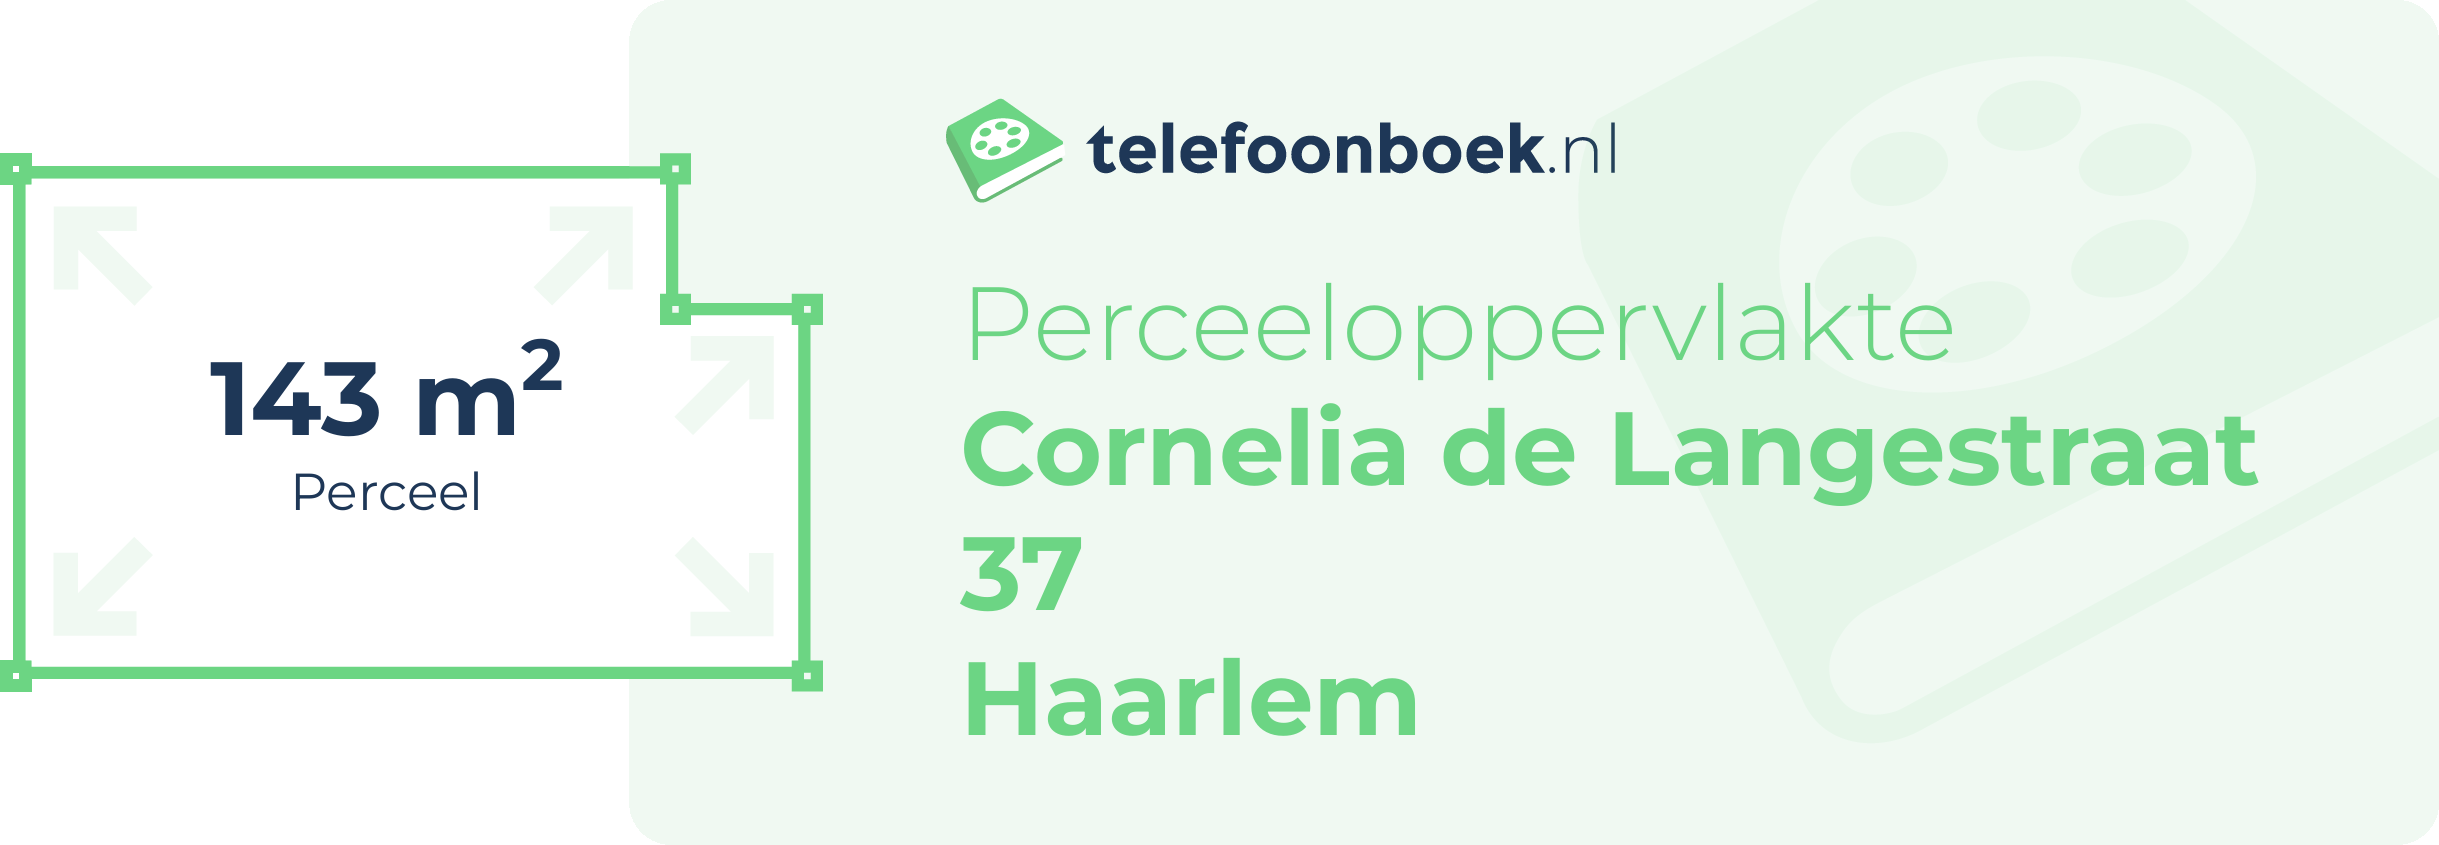 Perceeloppervlakte Cornelia De Langestraat 37 Haarlem